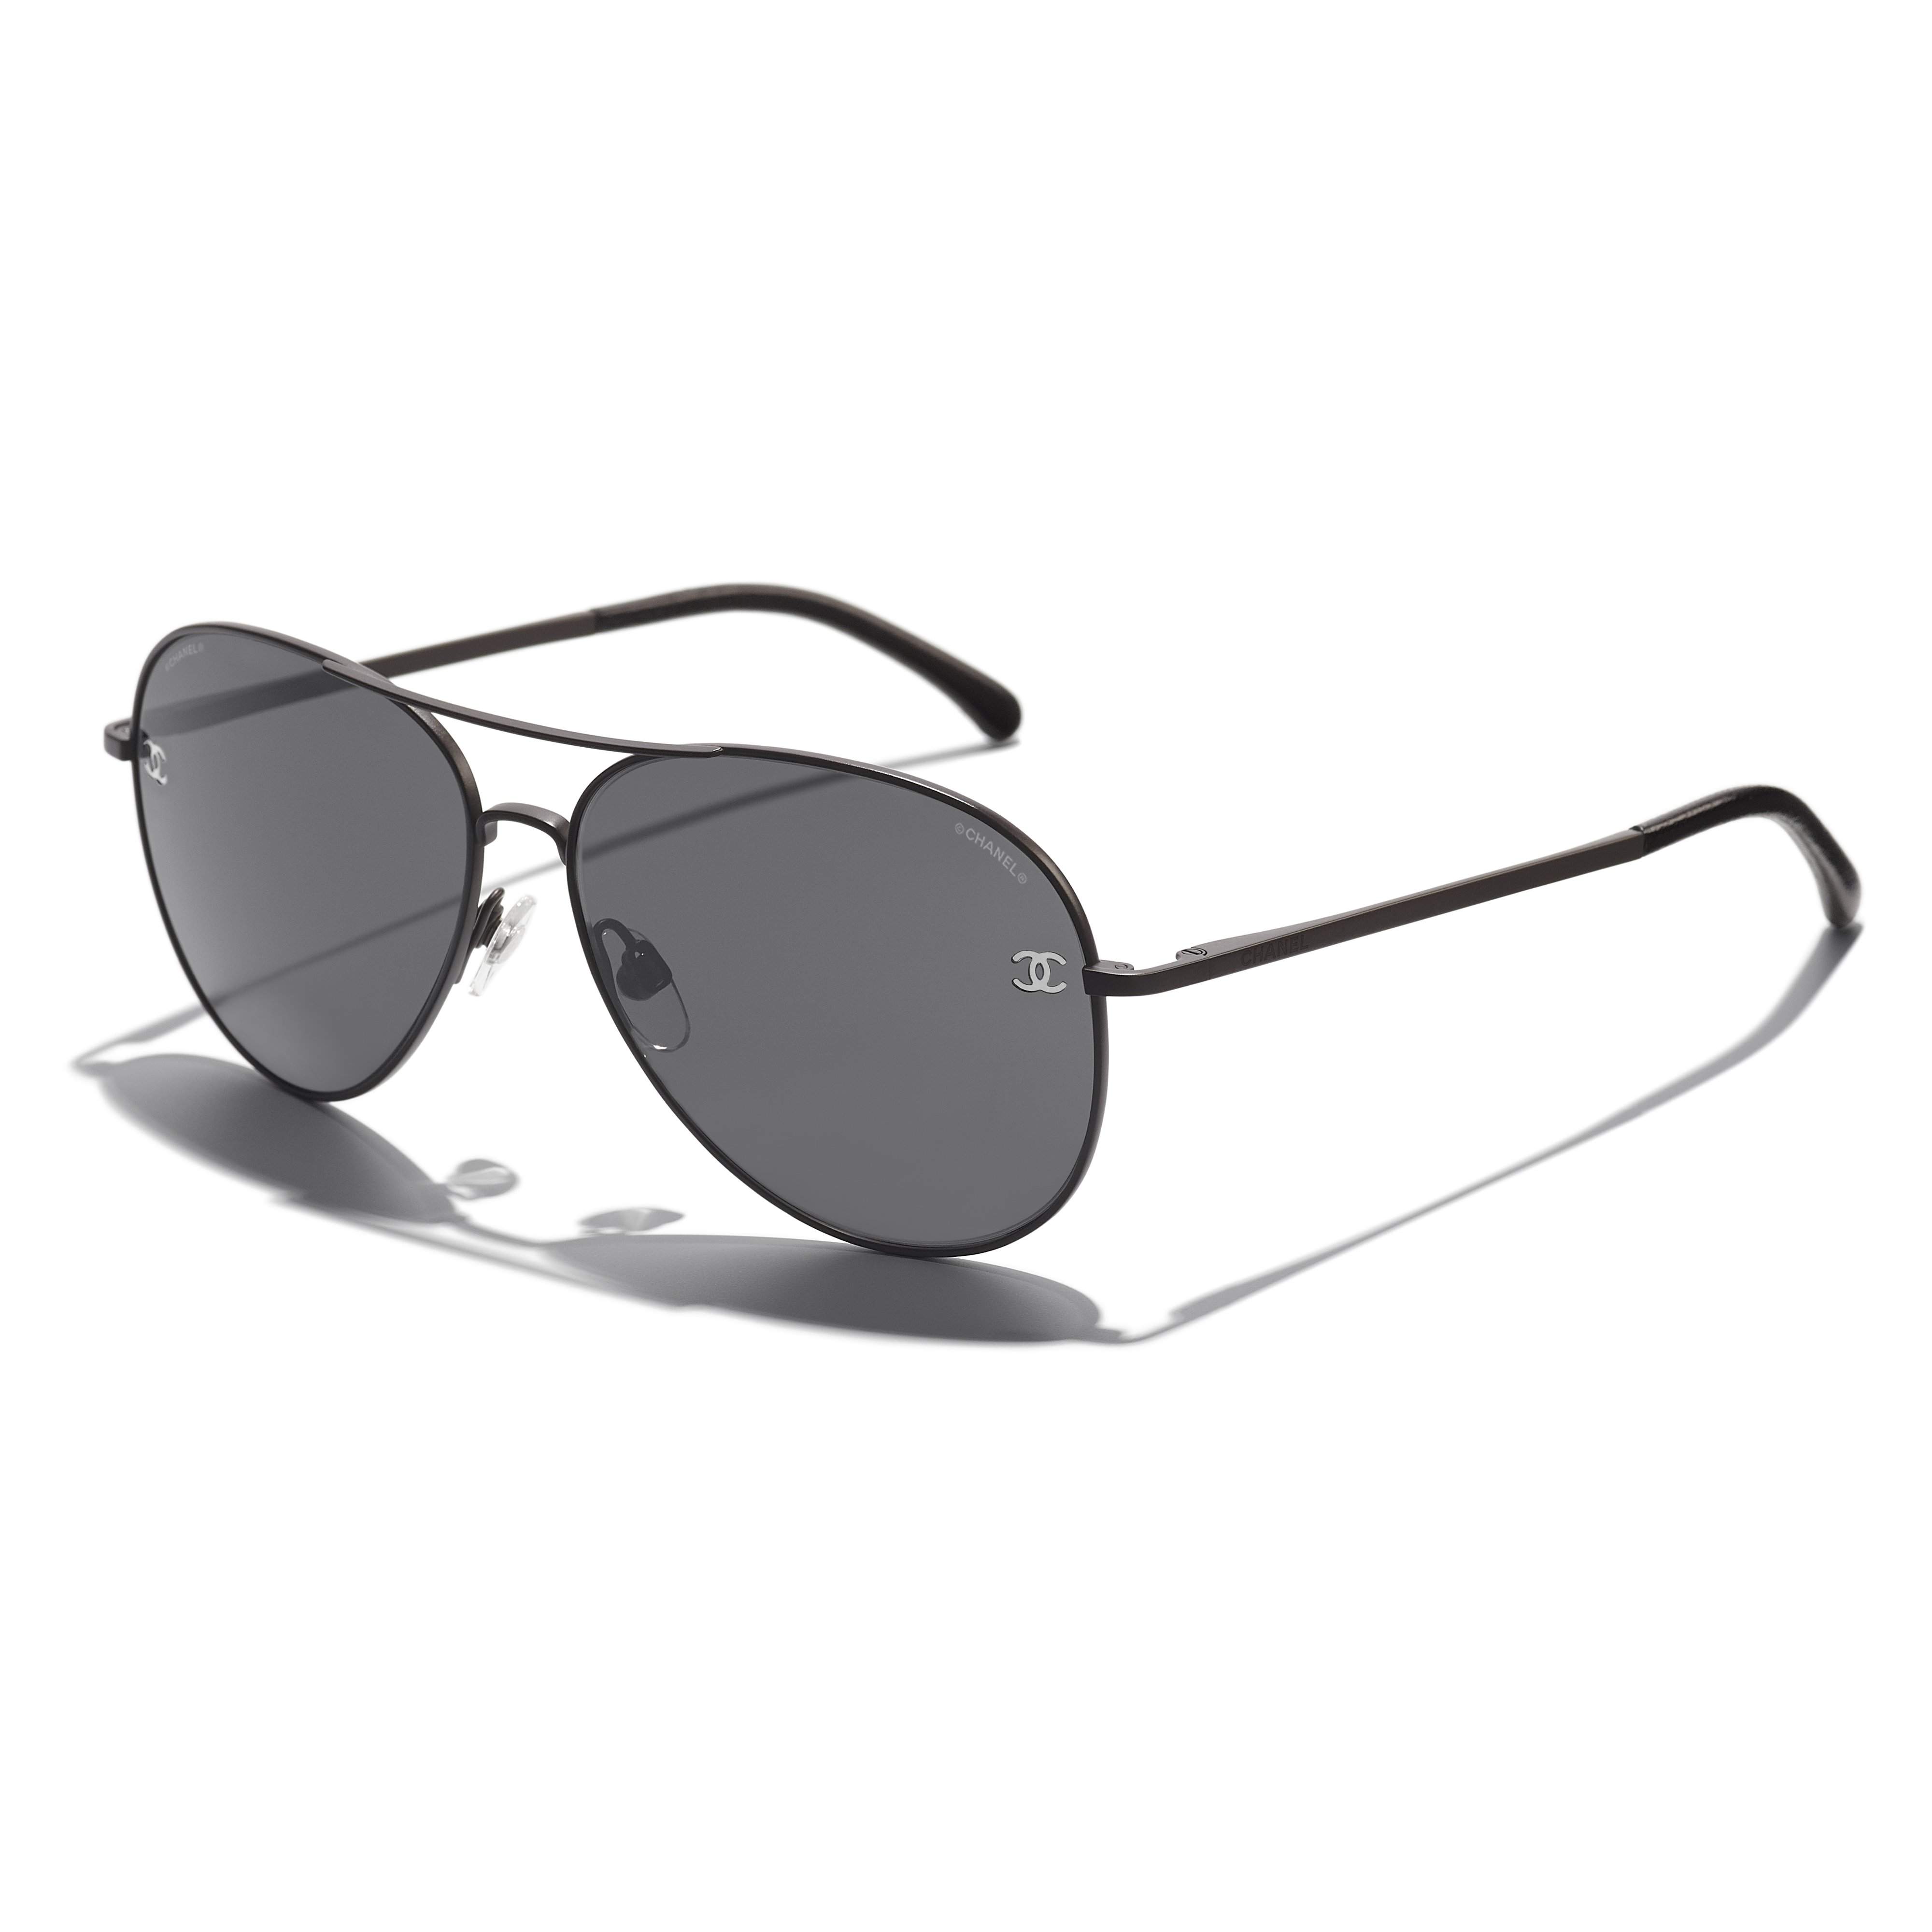 Sunglasses Chanel CH4189TQ C112/87 59-14 Black Matte Gradient in stock, Price 175,00 €